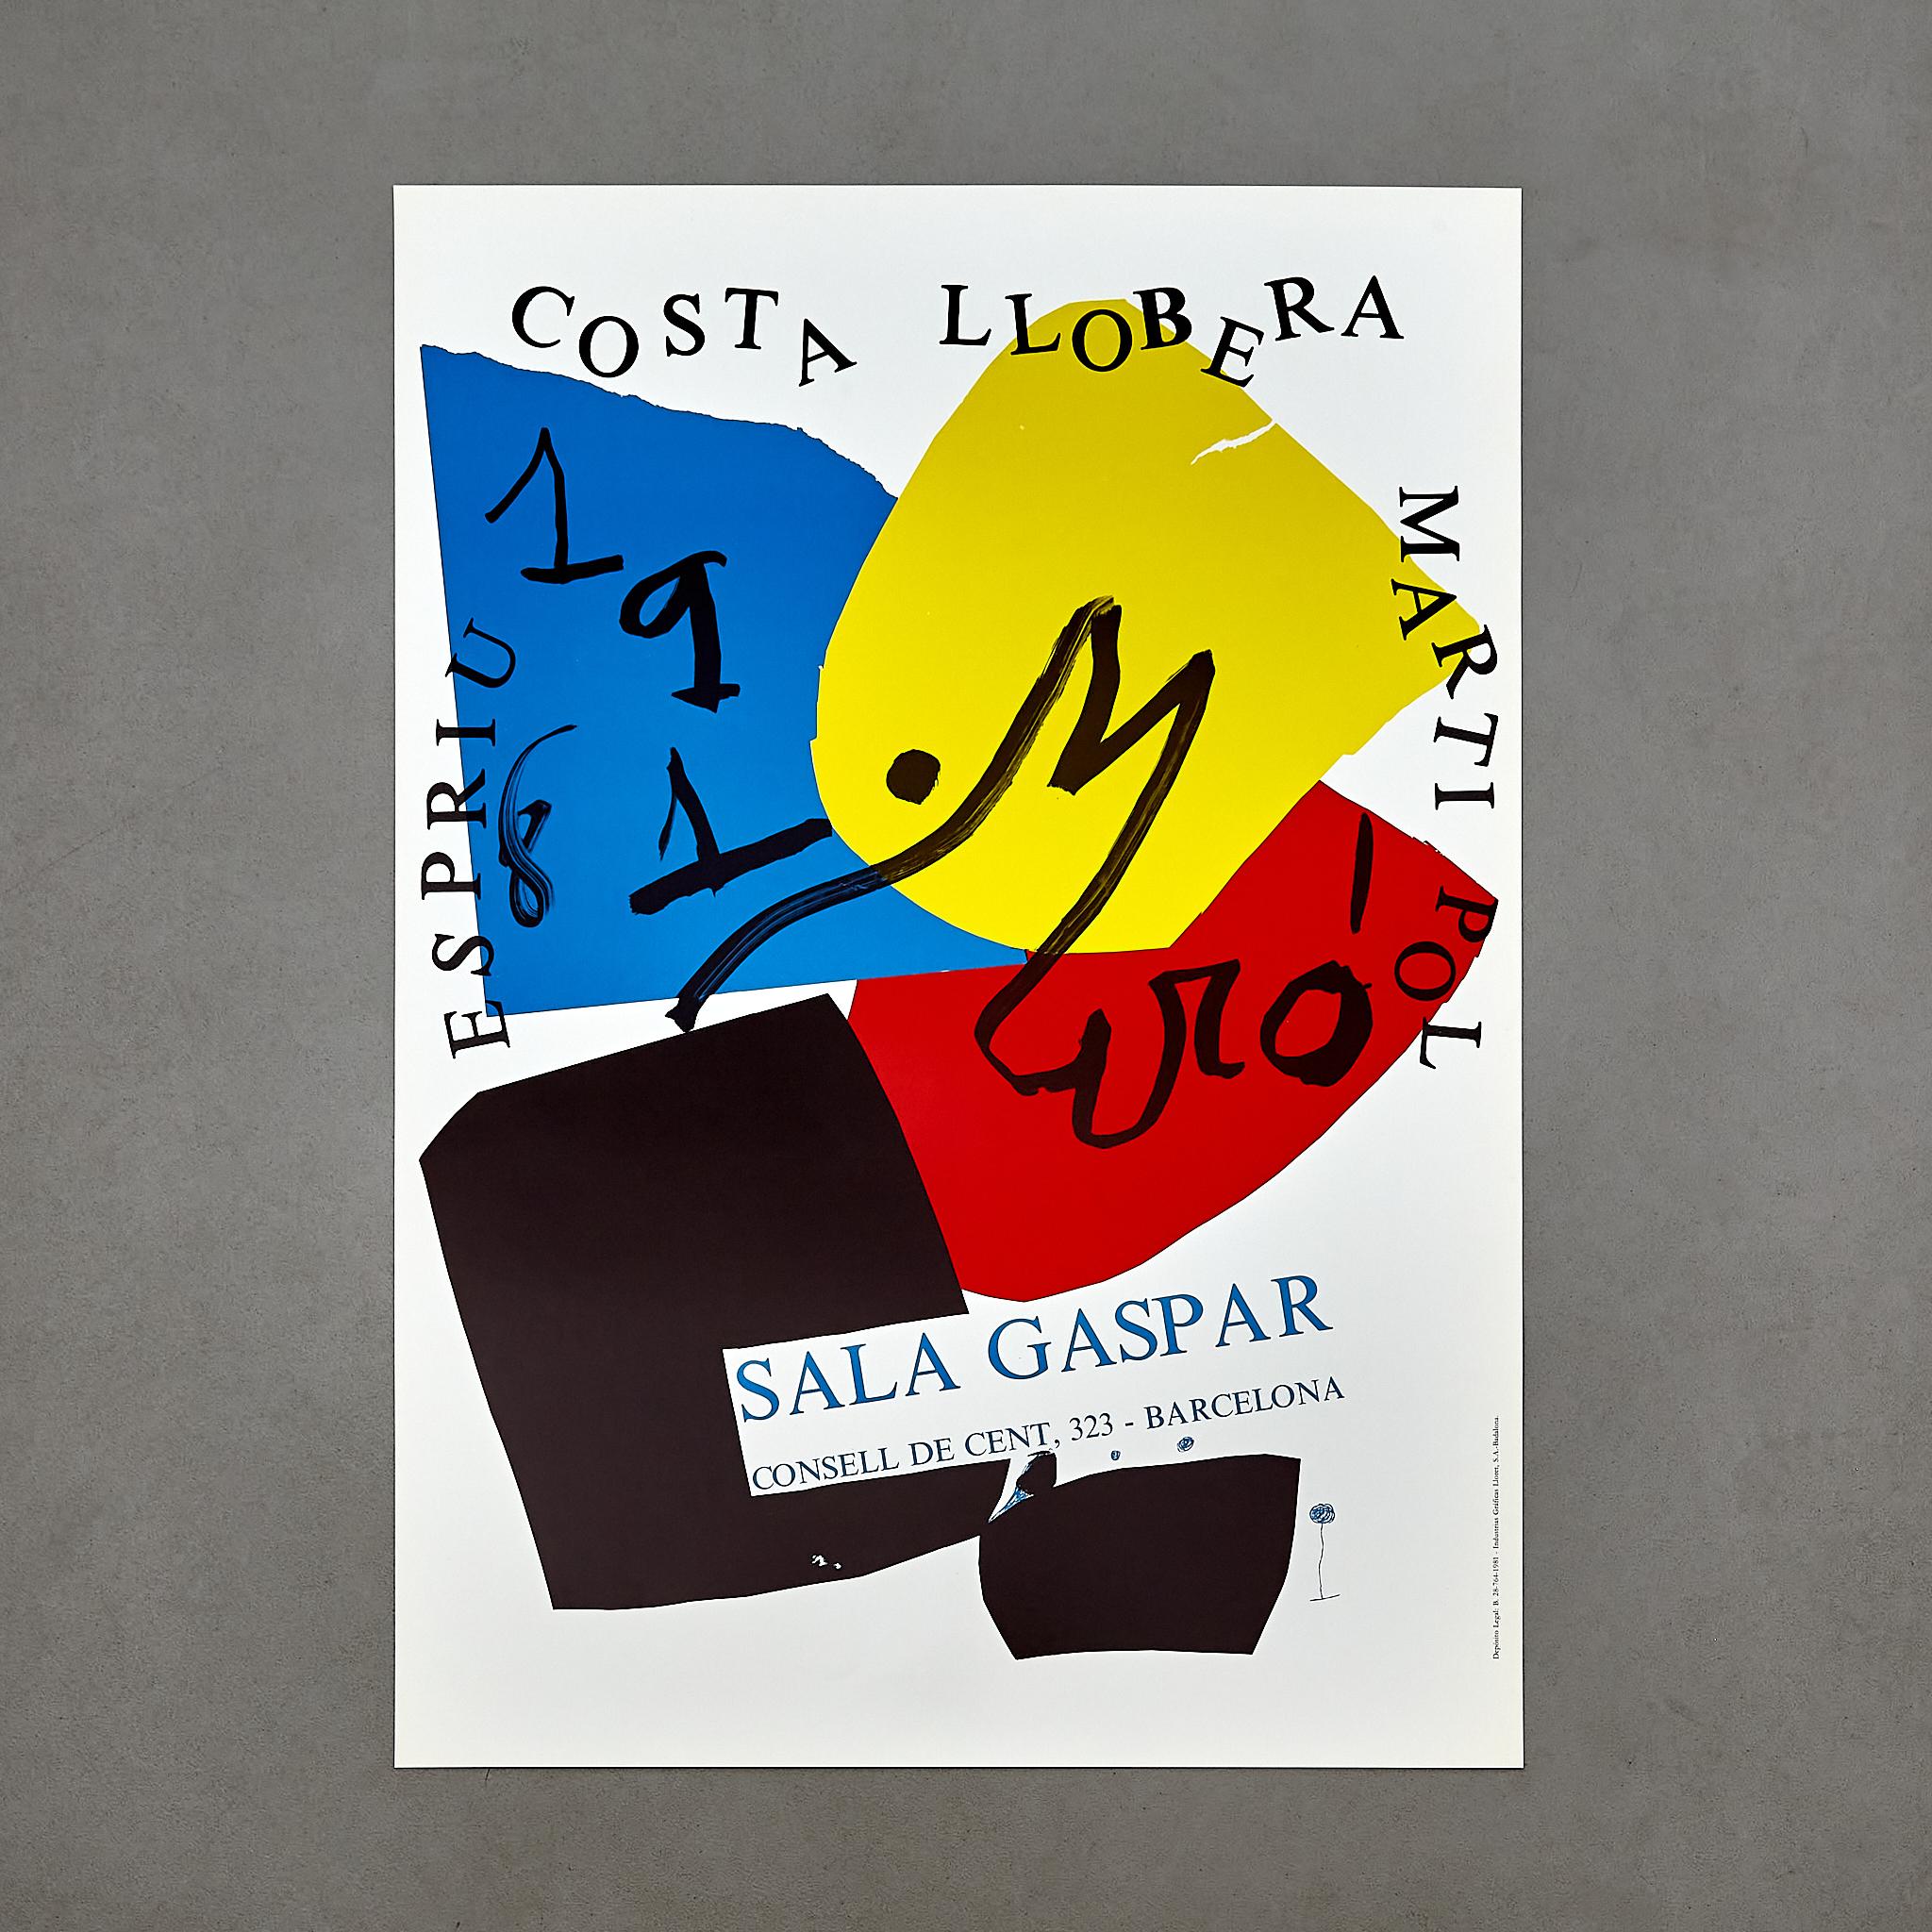 Affiche de Costa Llobera par Joan Miró.

Fabriqué en Espagne, vers 1981.

En état d'origine avec une usure mineure conforme à l'âge et à l'utilisation, préservant une belle patine.

Matériaux : 
Papier 

Dimensions : 
D 0,1 cm x L 49 cm x H 68,5